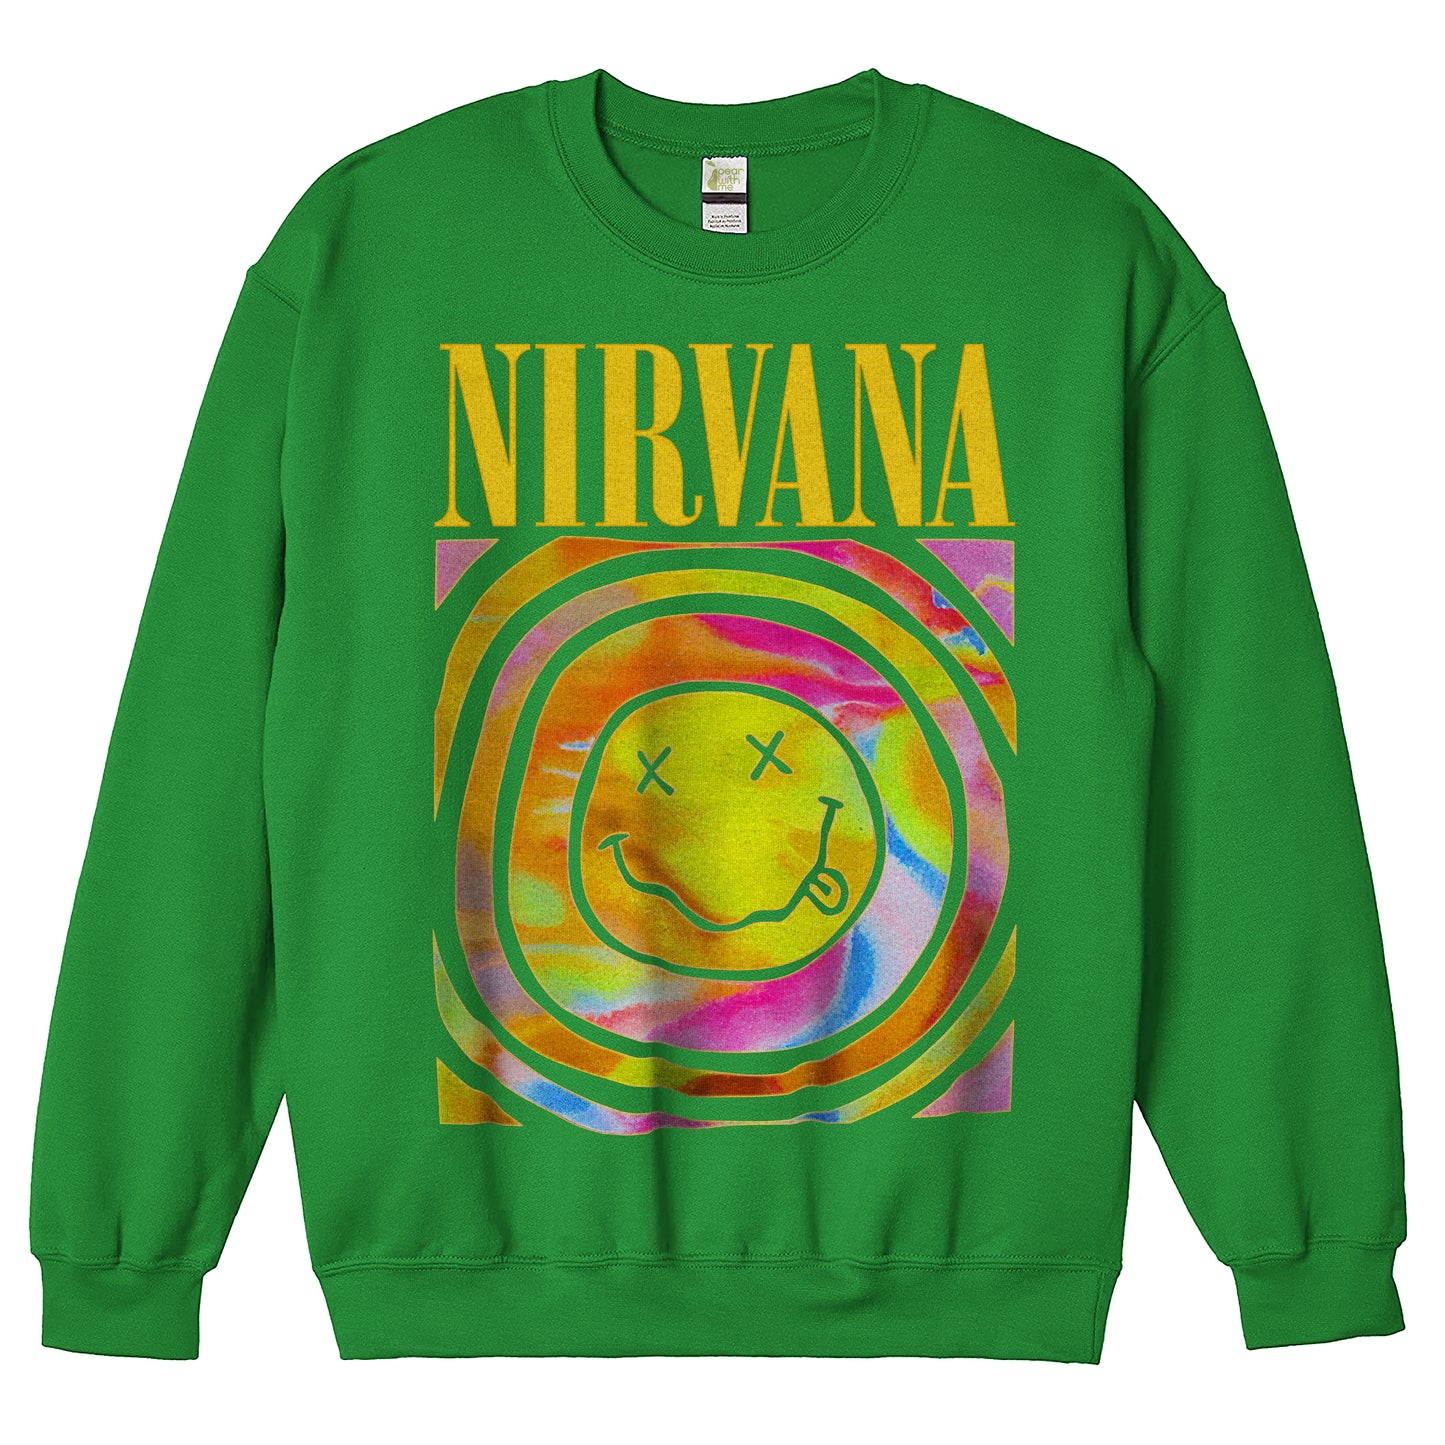 Nirvana Smiley Face Crewneck Sweatshirt Pullover